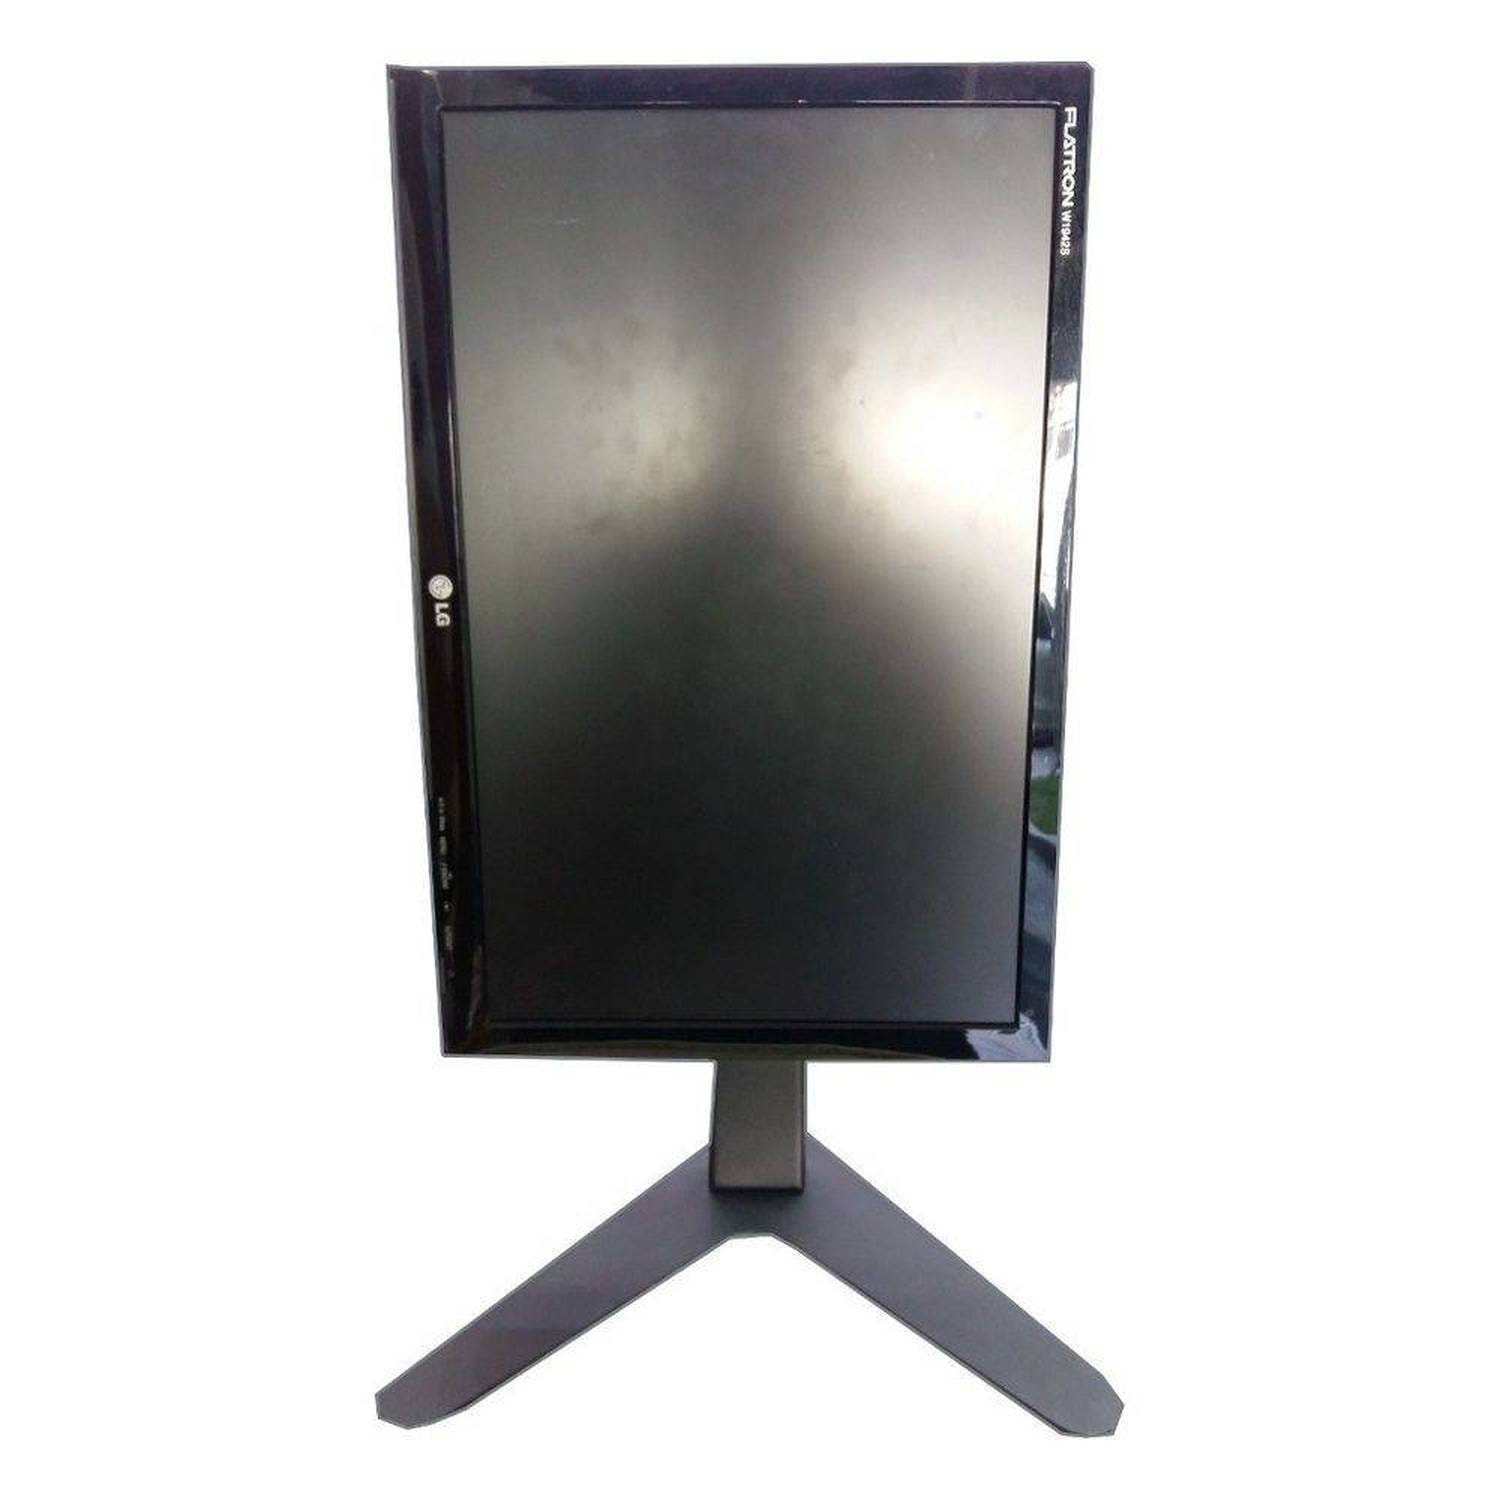 Suporte de Mesa/Pedestal Ergonômico Nr17 para Monitor Led/LCD/3D de 10" A 24" com Inclinação Mt-Slim - - 7